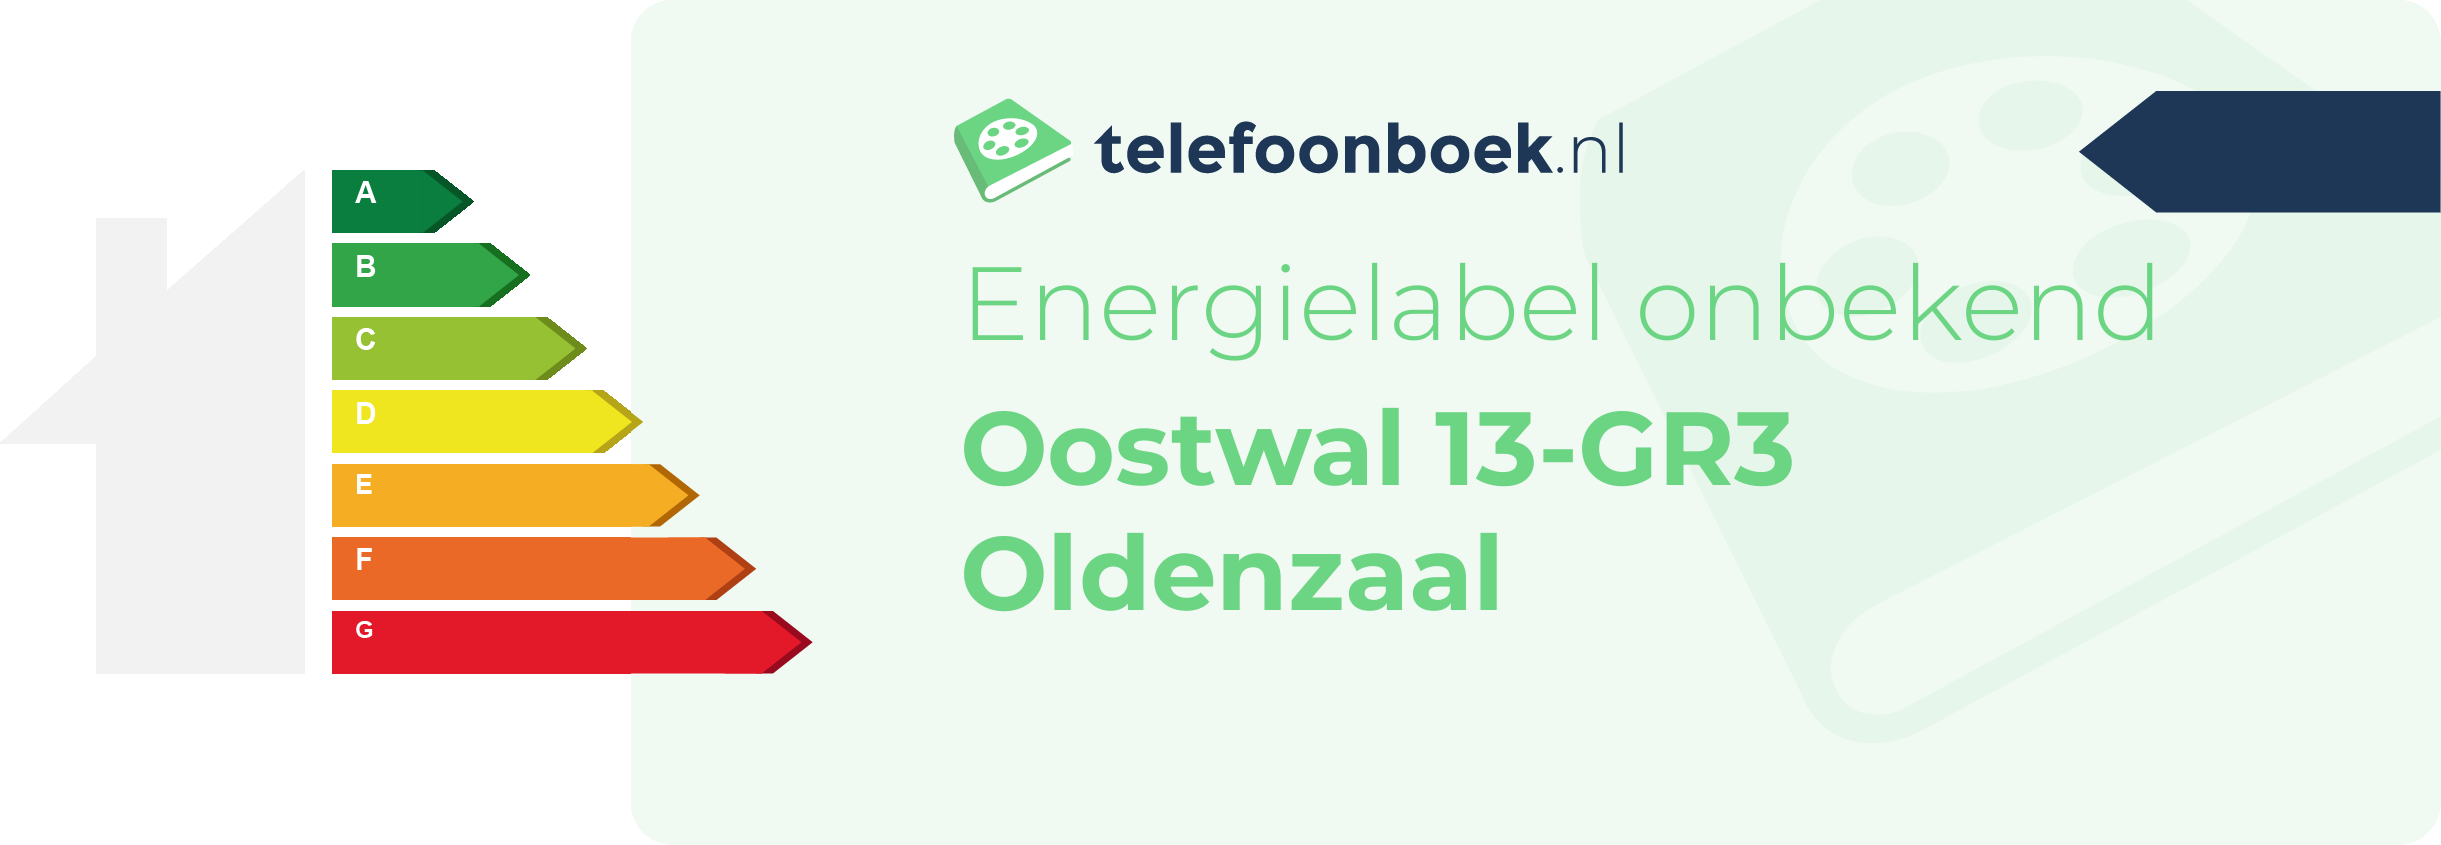 Energielabel Oostwal 13-GR3 Oldenzaal